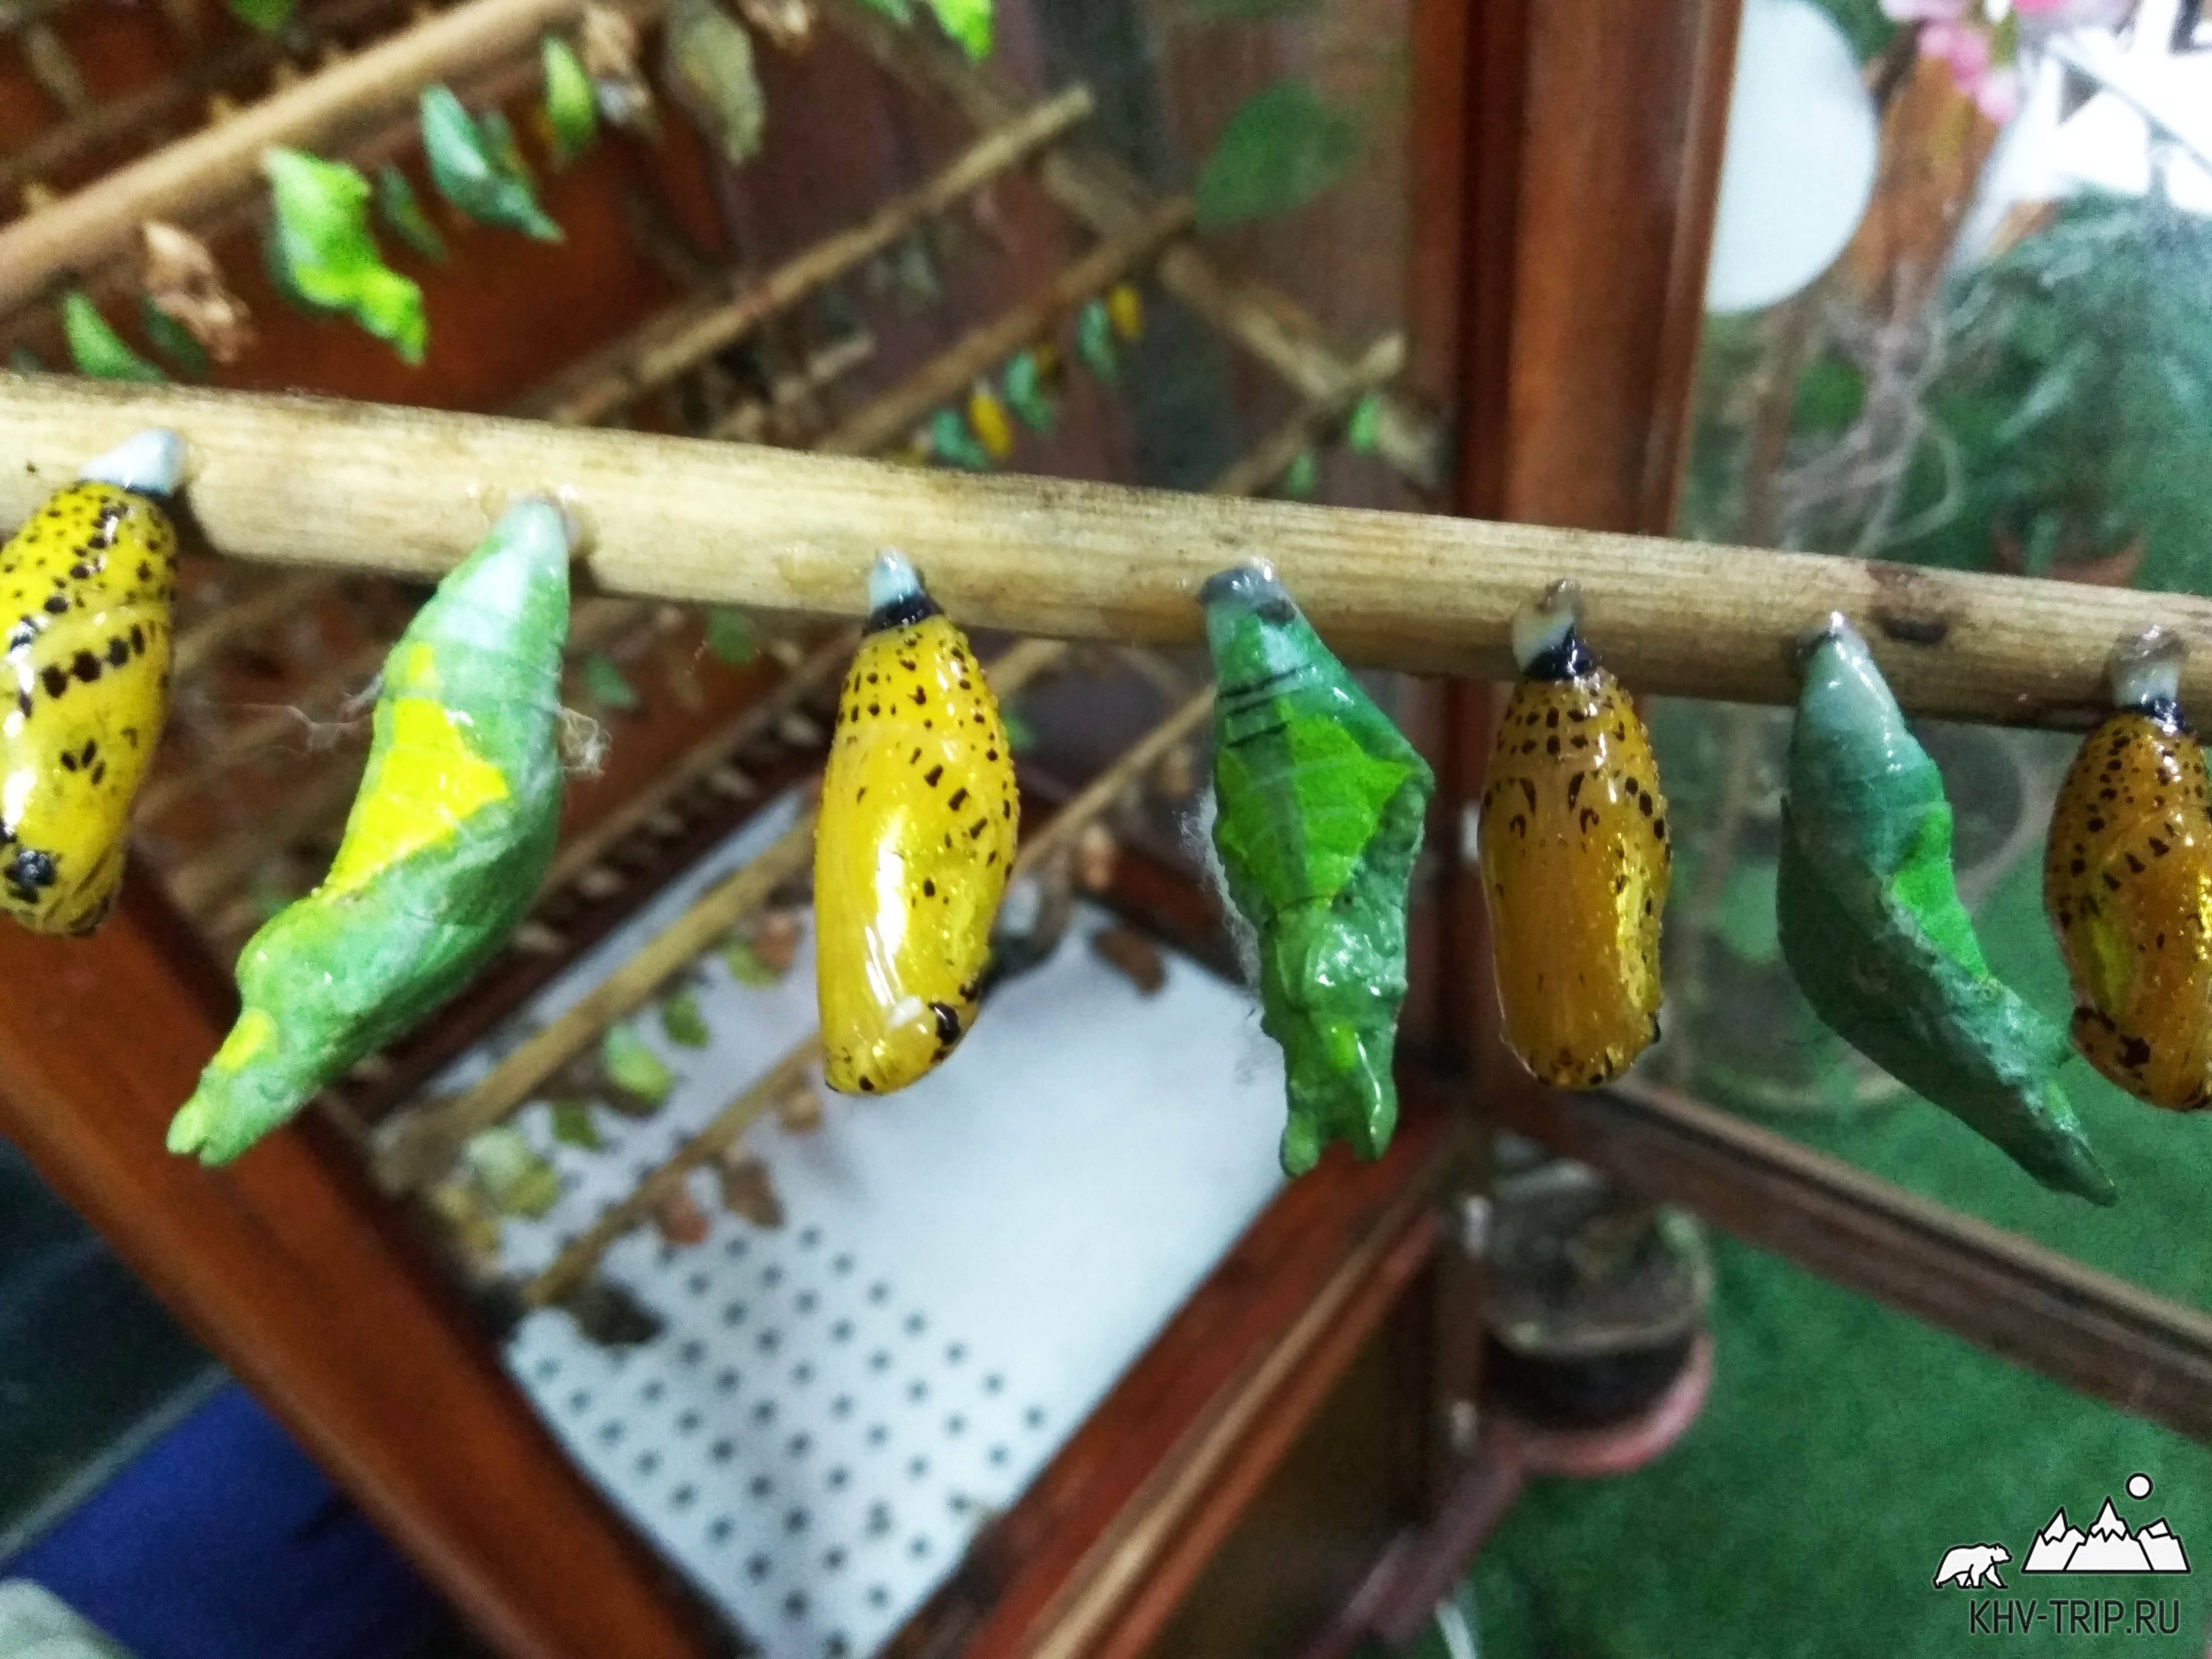 Бизнес по разведению бабочек: надежный доход от хрупкой красоты